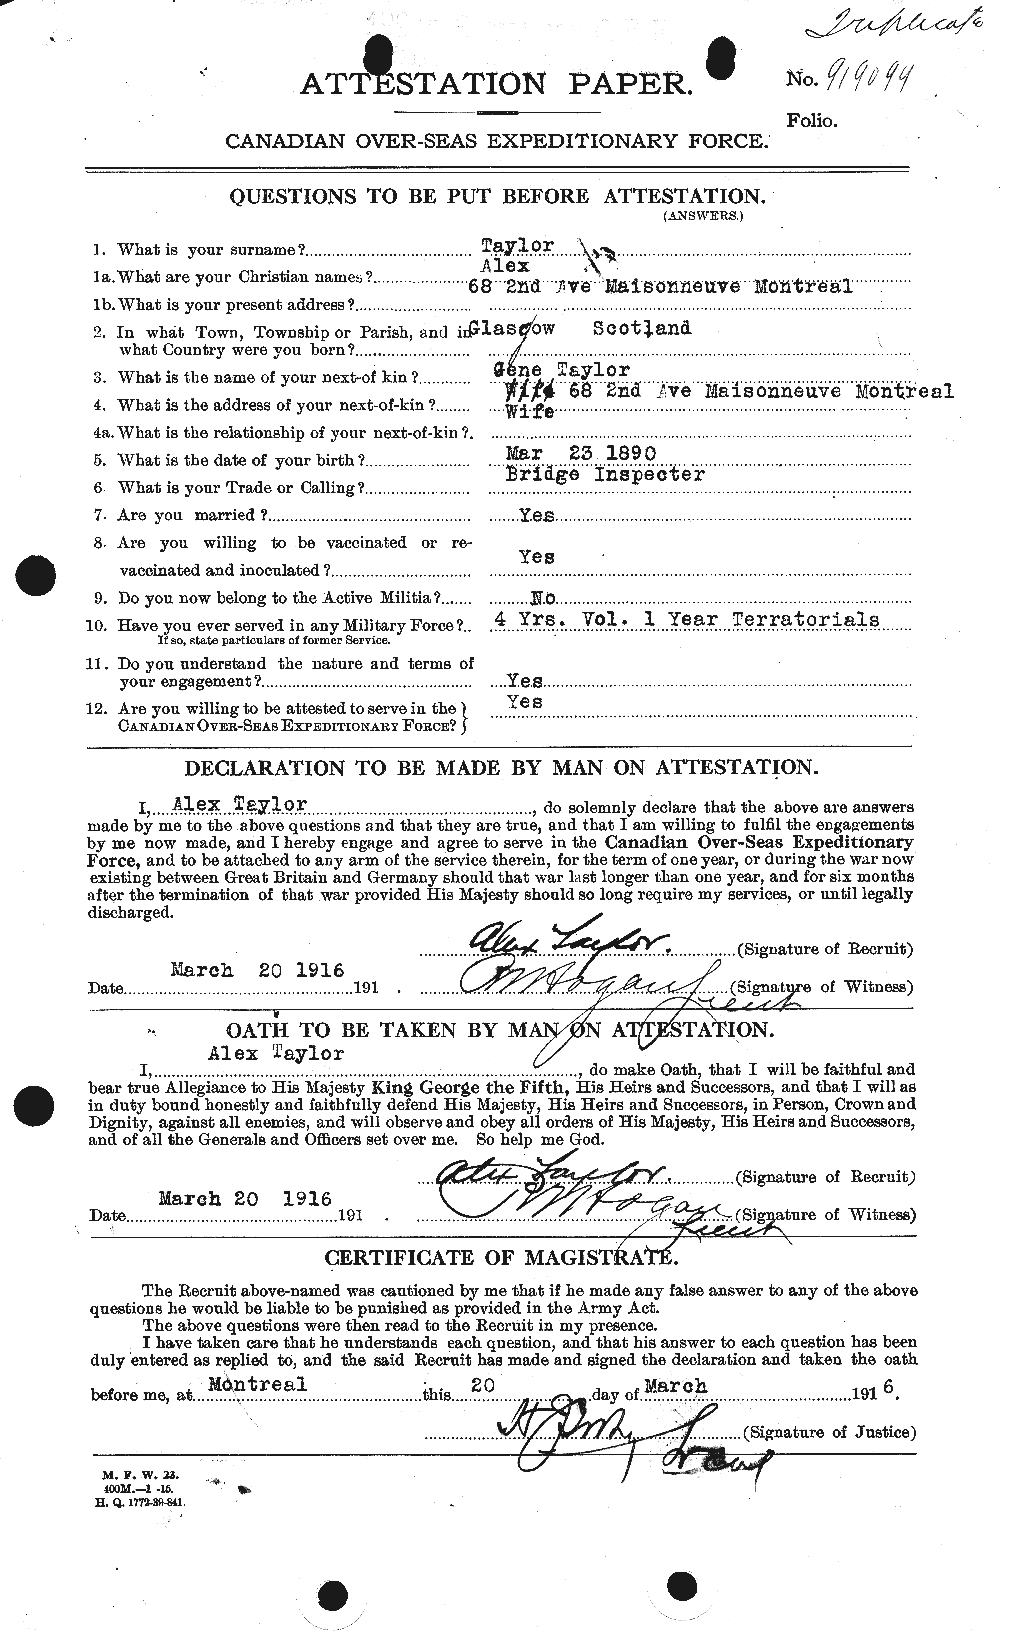 Dossiers du Personnel de la Première Guerre mondiale - CEC 626131a